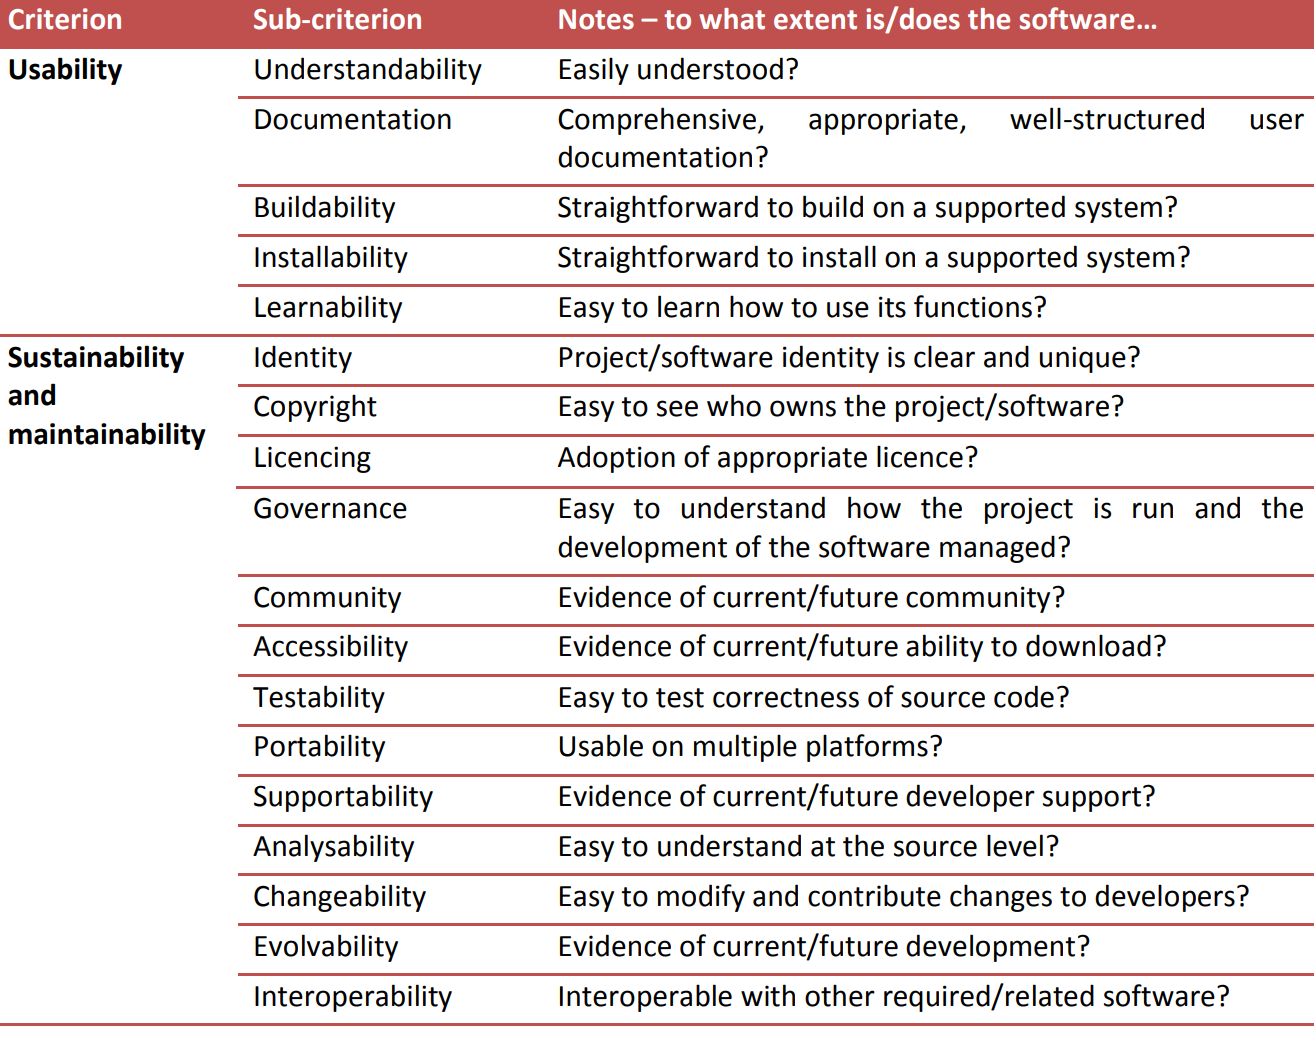 Abbildung 3. Themenkategorien, die das Software Sustainability Institute für seine kriteriengestützte quantitative Bewertung der Software verwendet.